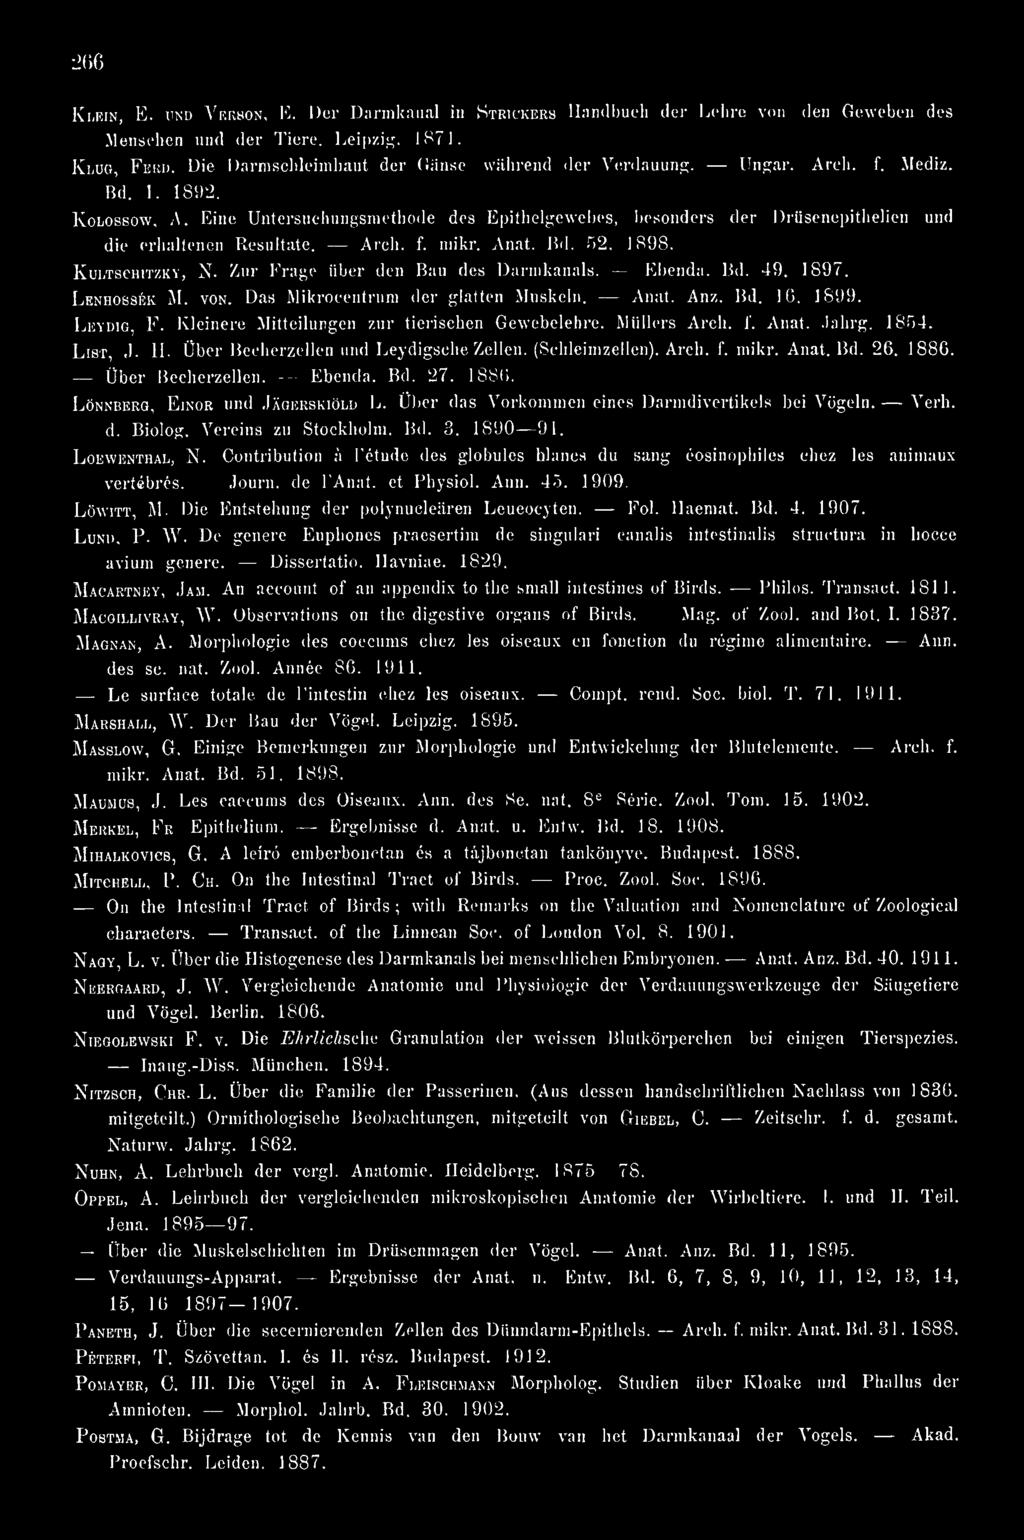 Eine Untersuchungsmetbode des Epithelgewebes, besonders der Drüsenepithelien und die erhaltenen Resultate. Arch. f. mikr. Anat. Bd. 52. 1898. KuLTSCHiTZKY, N. Zur Frage über den Bau des Darmkanals.